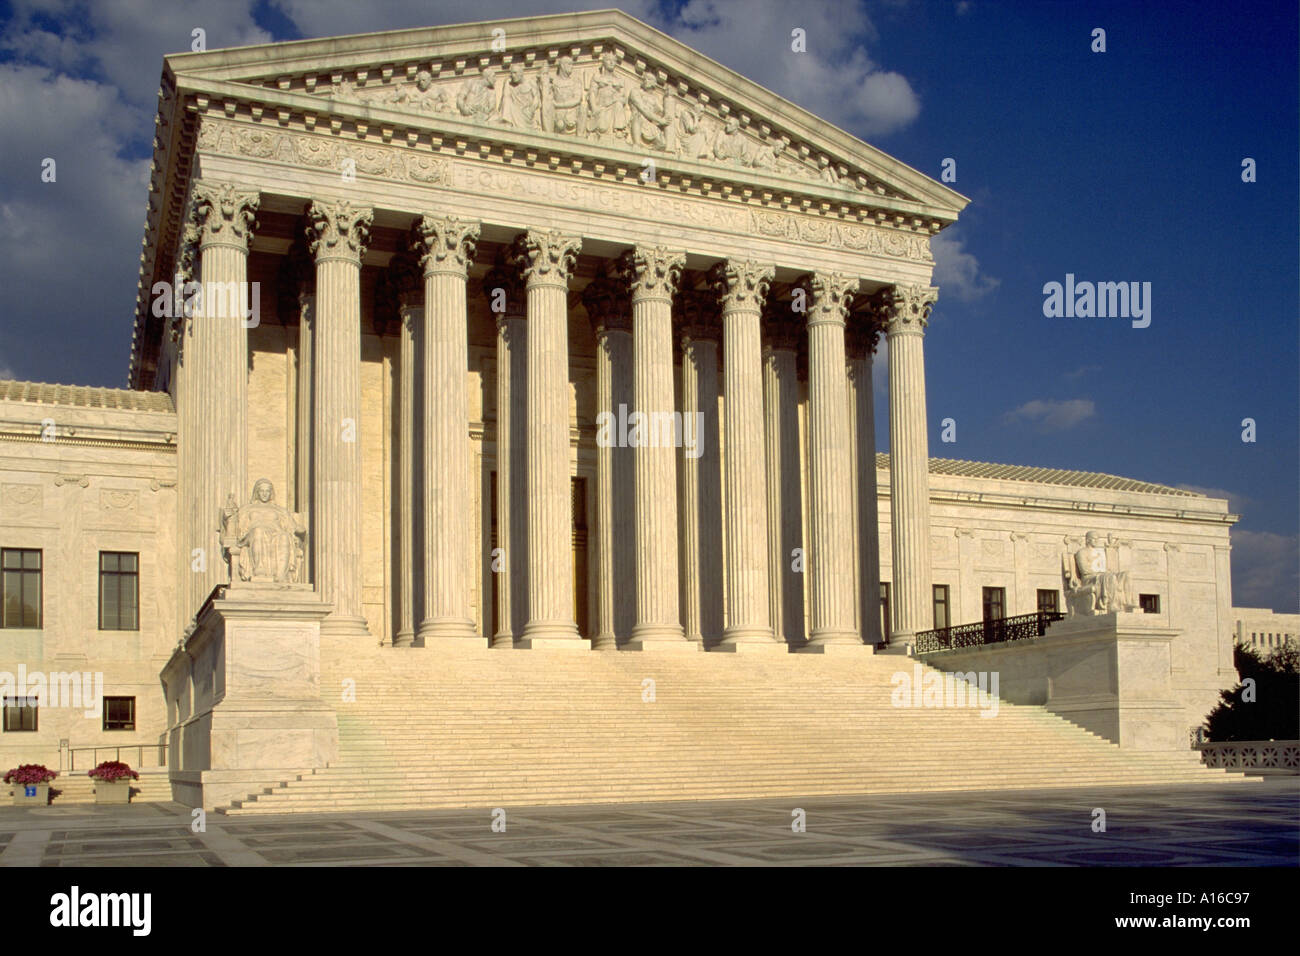 U.S. Supreme Court building, Washington D.C. Stock Photo